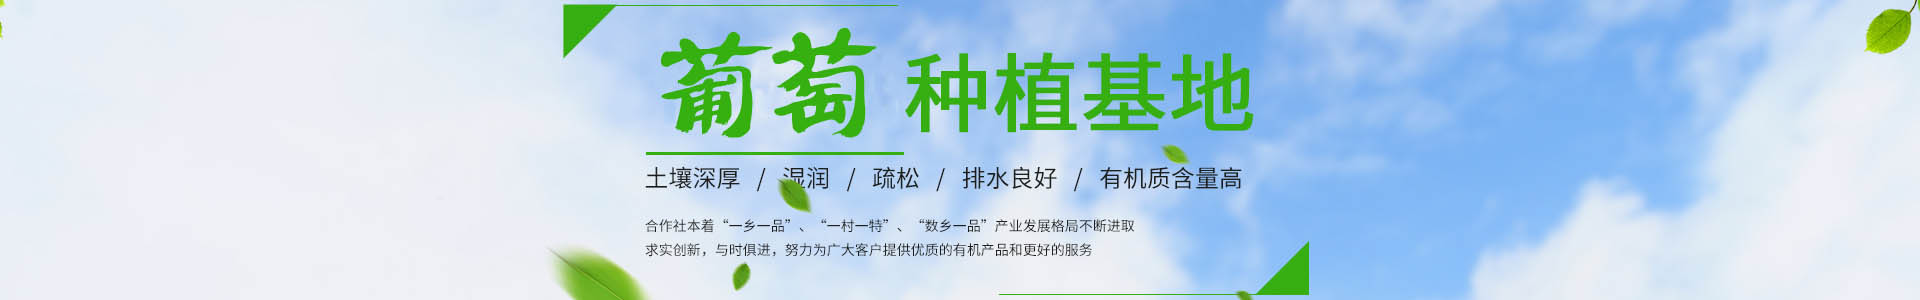 台州市路桥超藤葡萄专业合作社